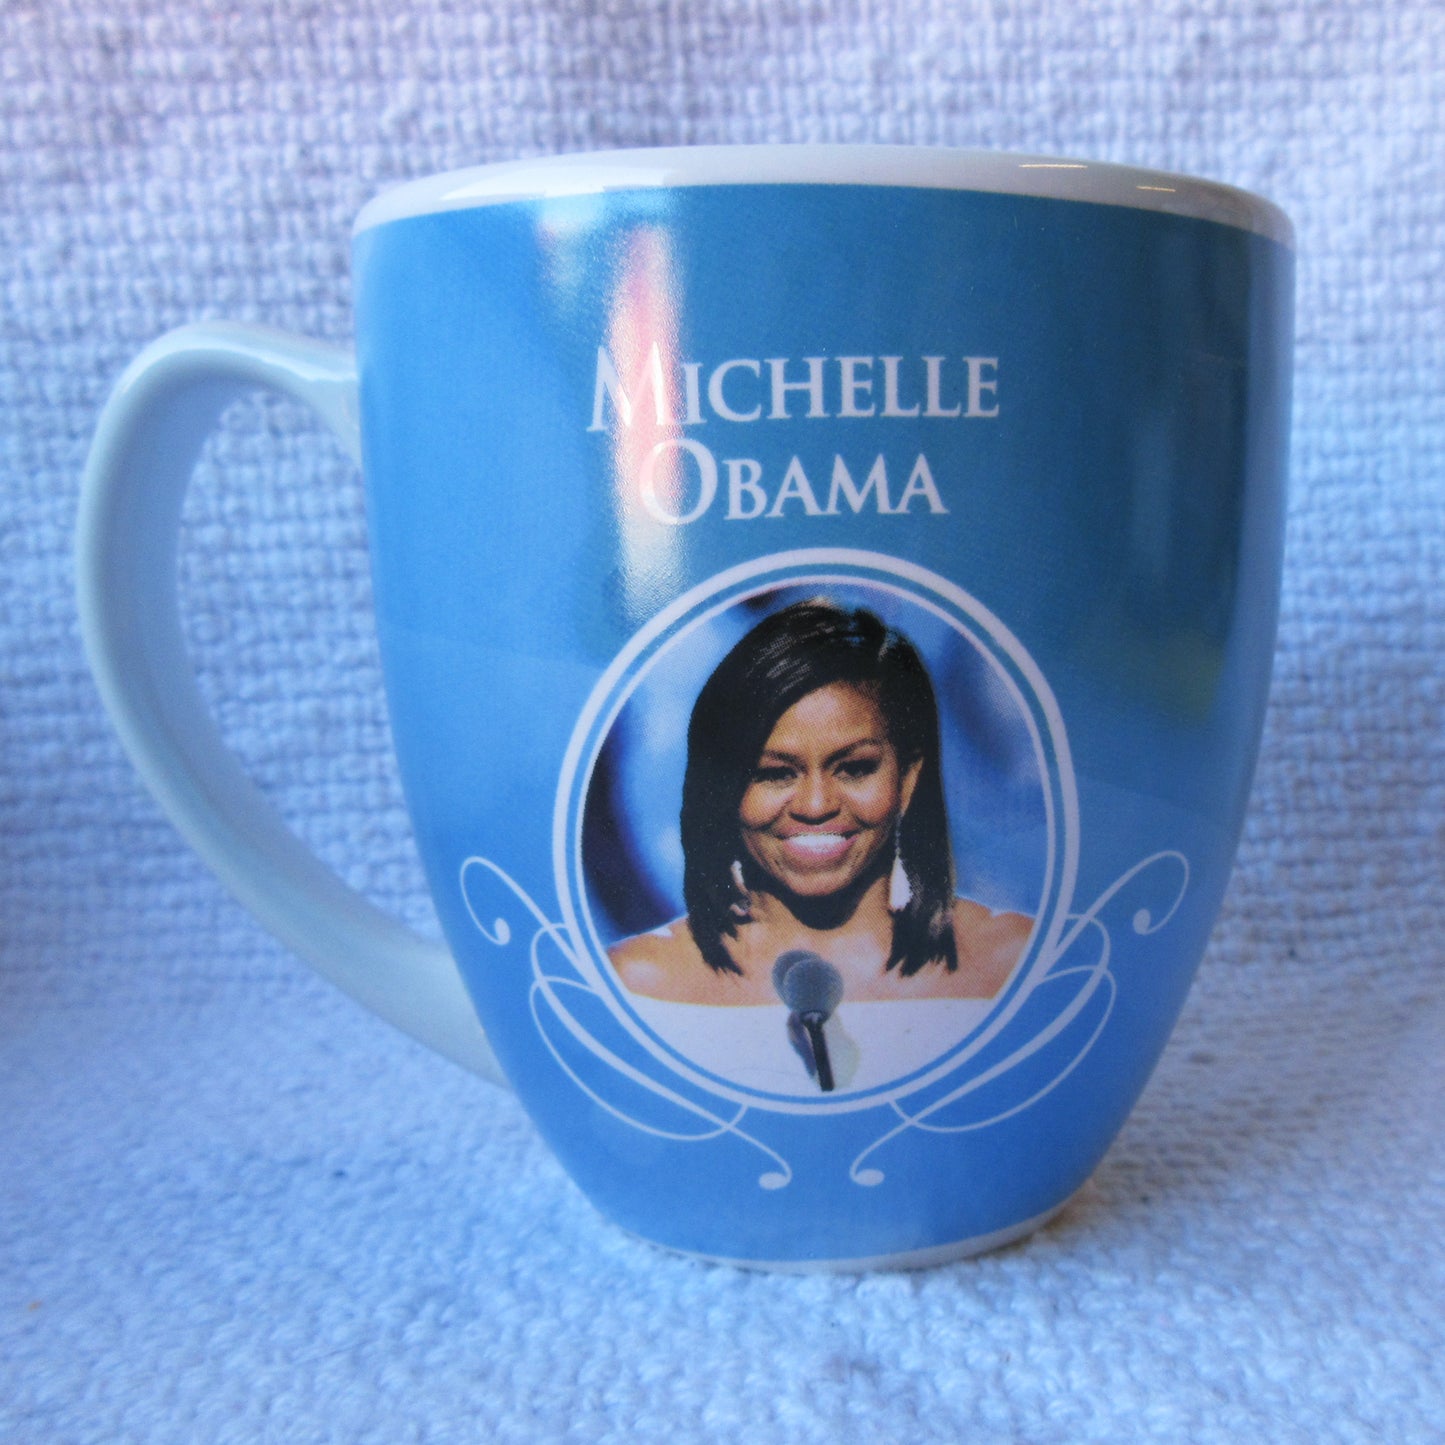 Michelle Obama Latte Mug front